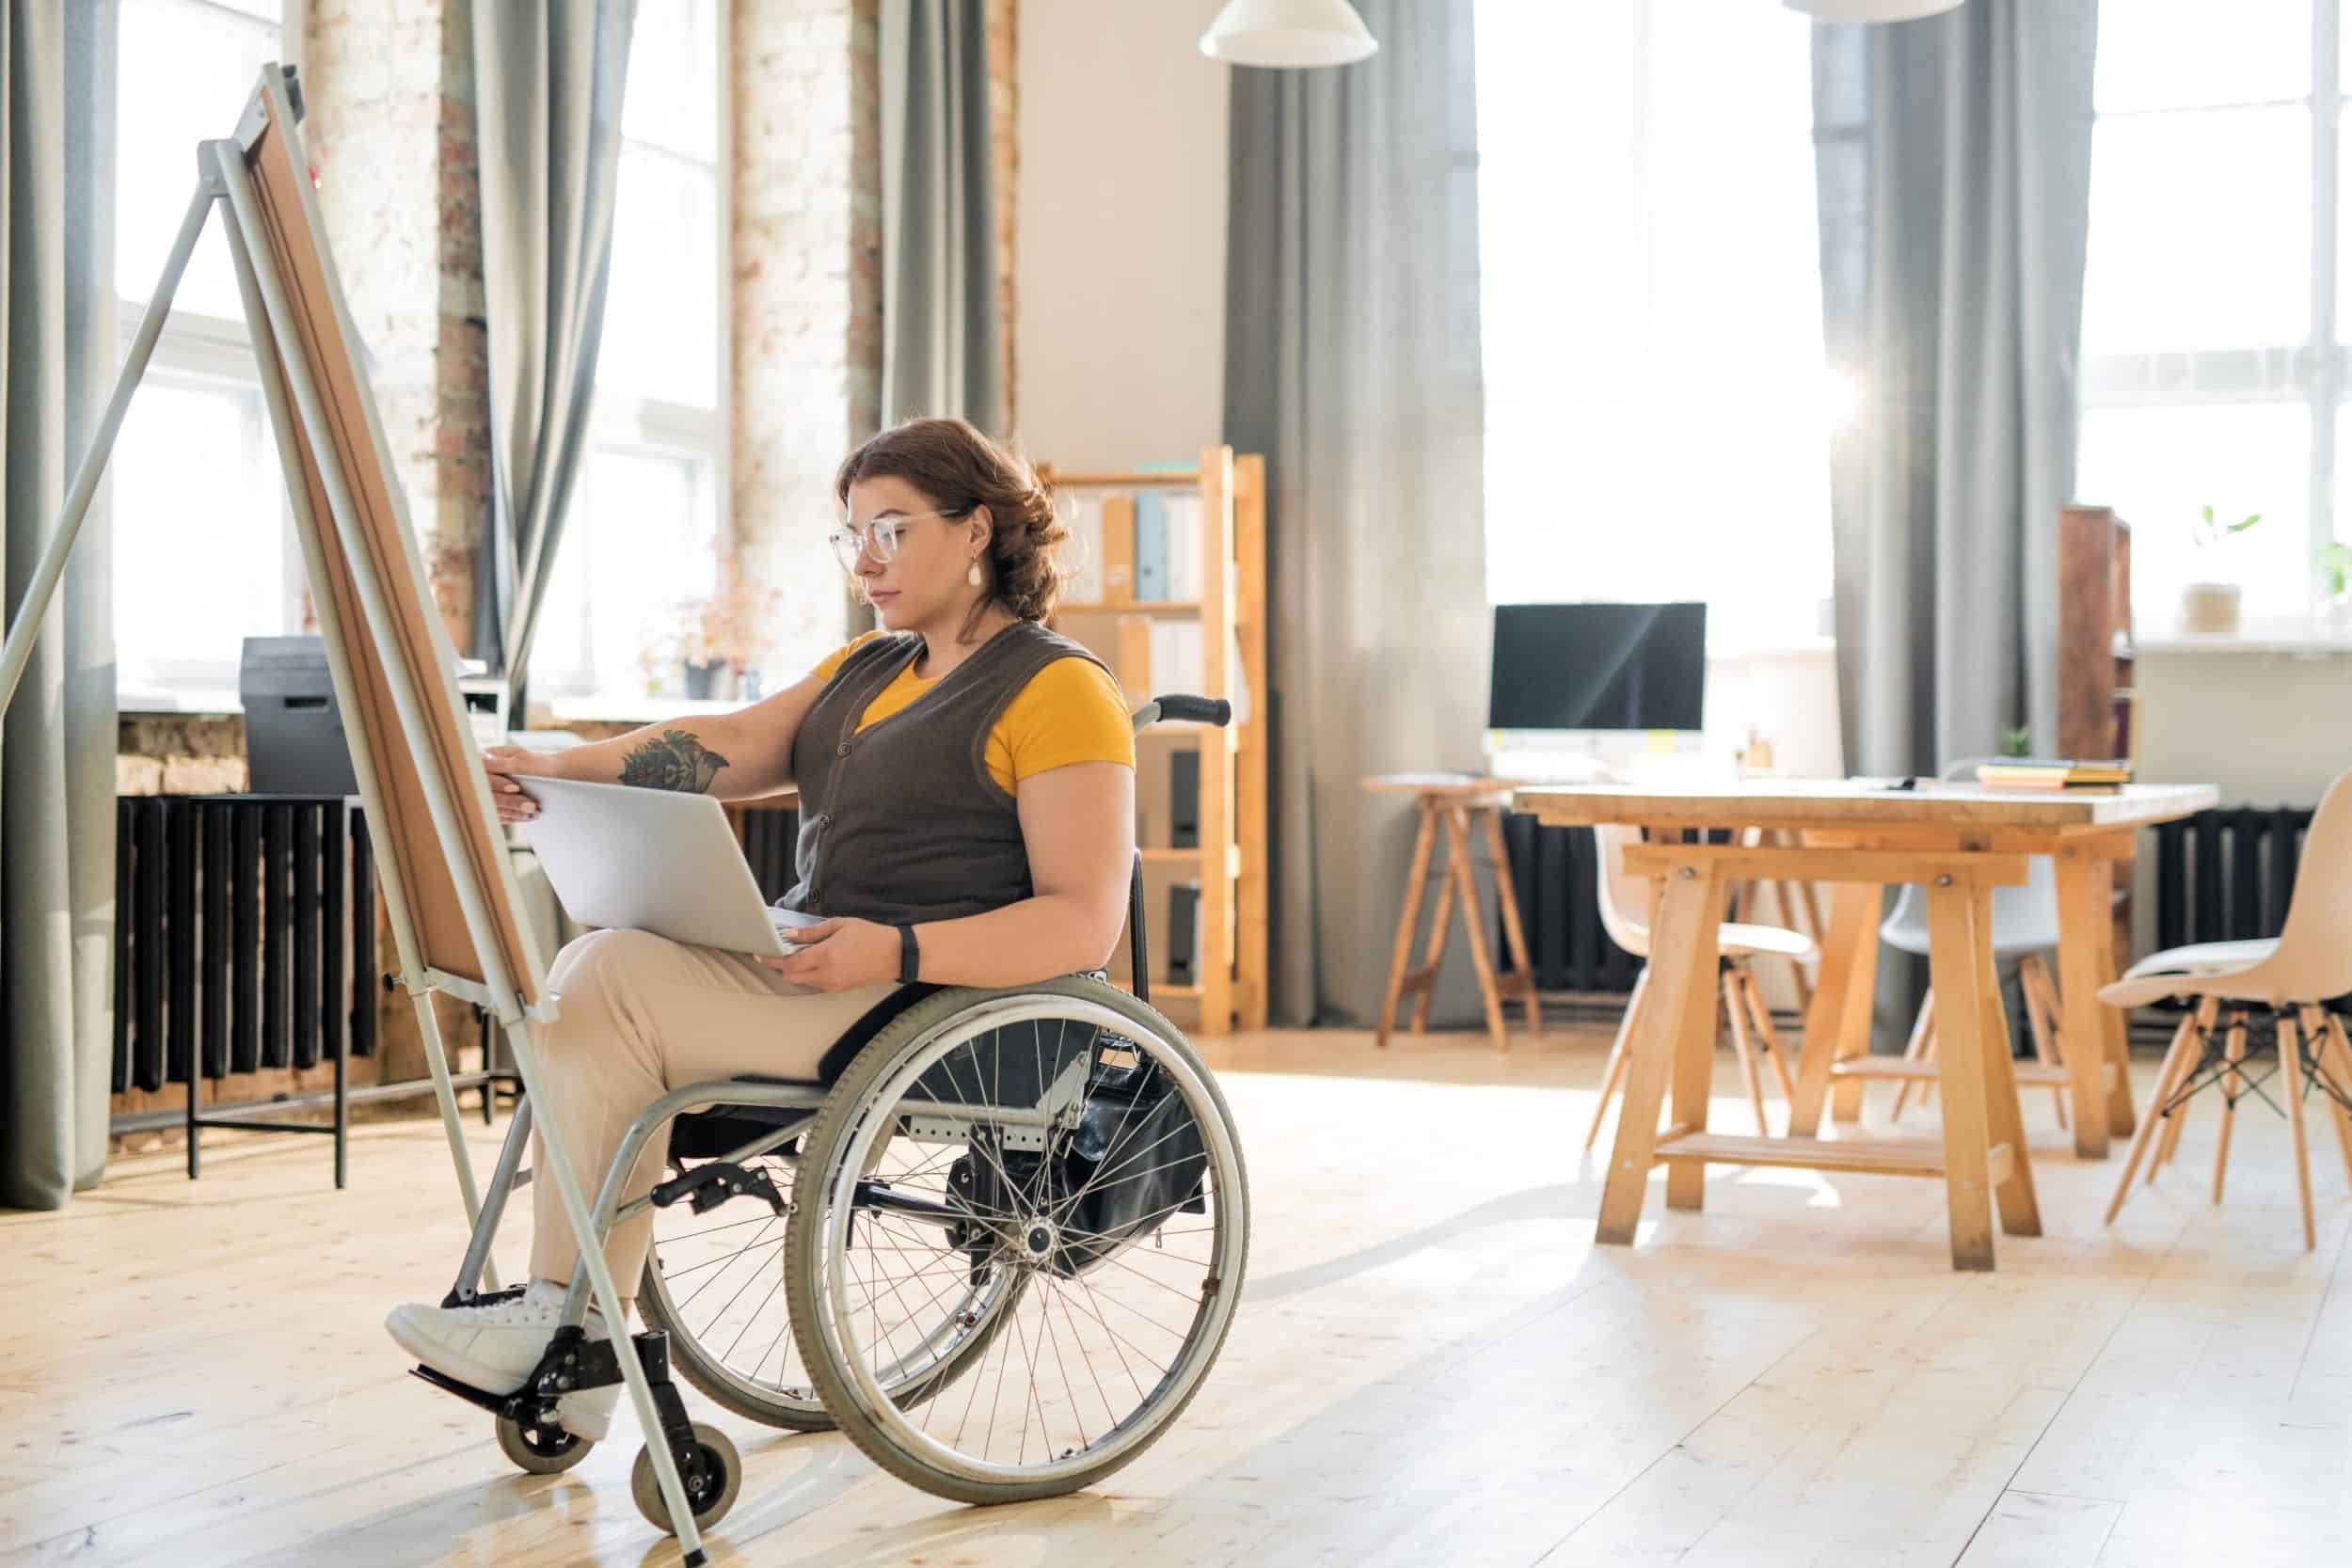 Person i rullstol sitter i ett rum och har en dator i knäet. I bakgrunden syns vacker inredning och långa gardiner.